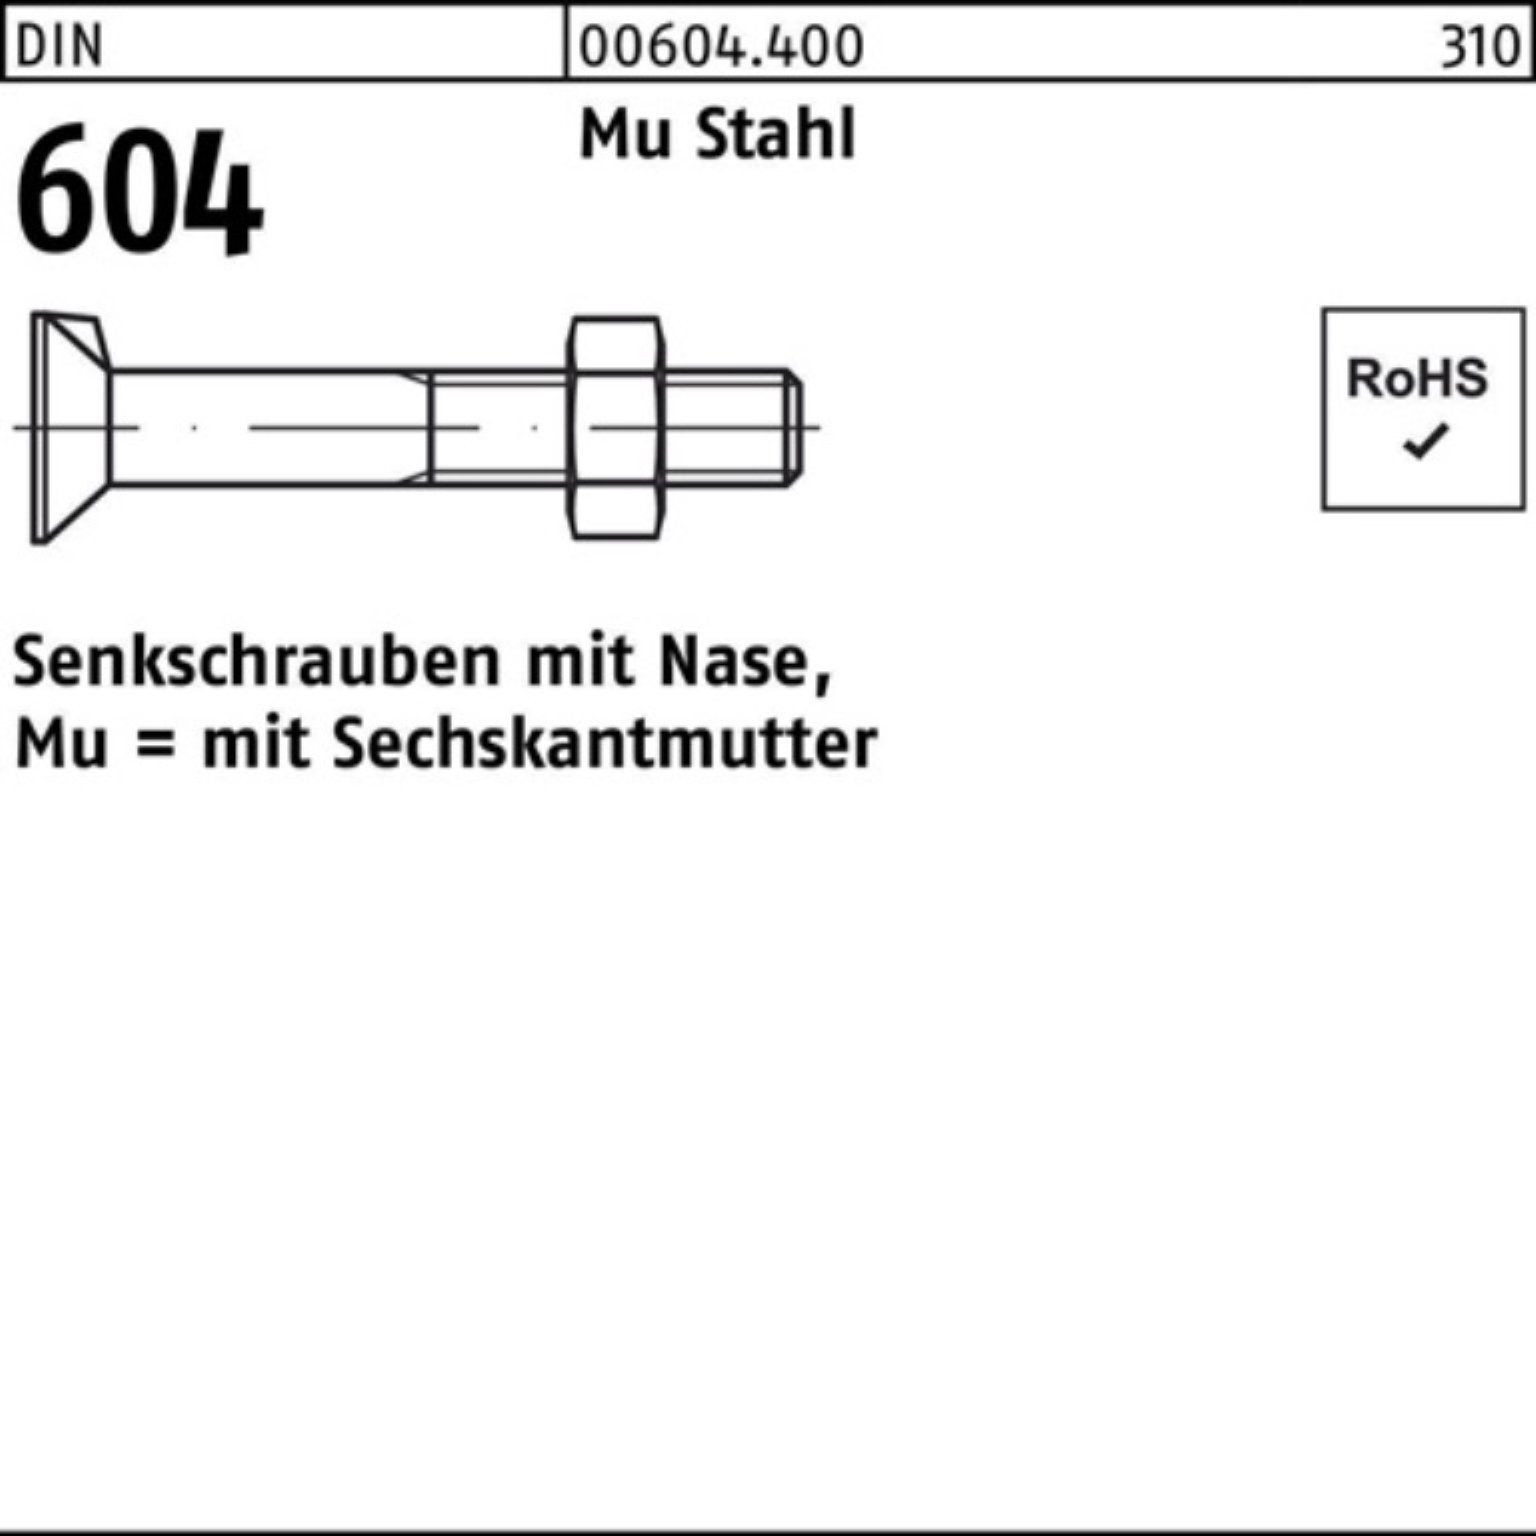 Reyher Senkschraube 100er Pack Senkschraube DIN 604 Nase/6-ktmutter M12x 60 Mu Stahl 4.6 1